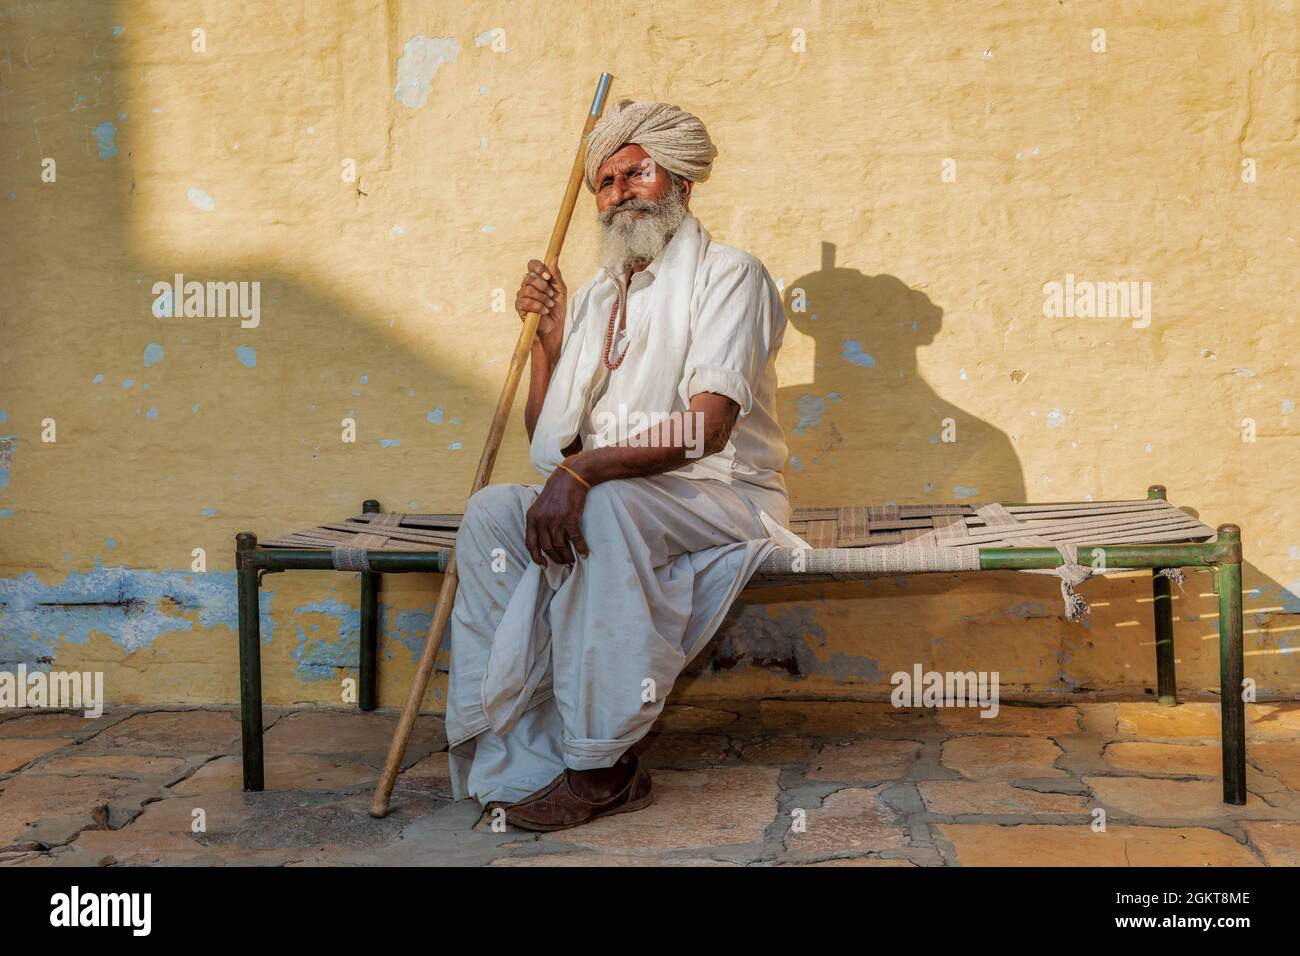 Portrait eines älteren indischen Mann, Jaisalmer, Rajasthan, Indien Stockfoto